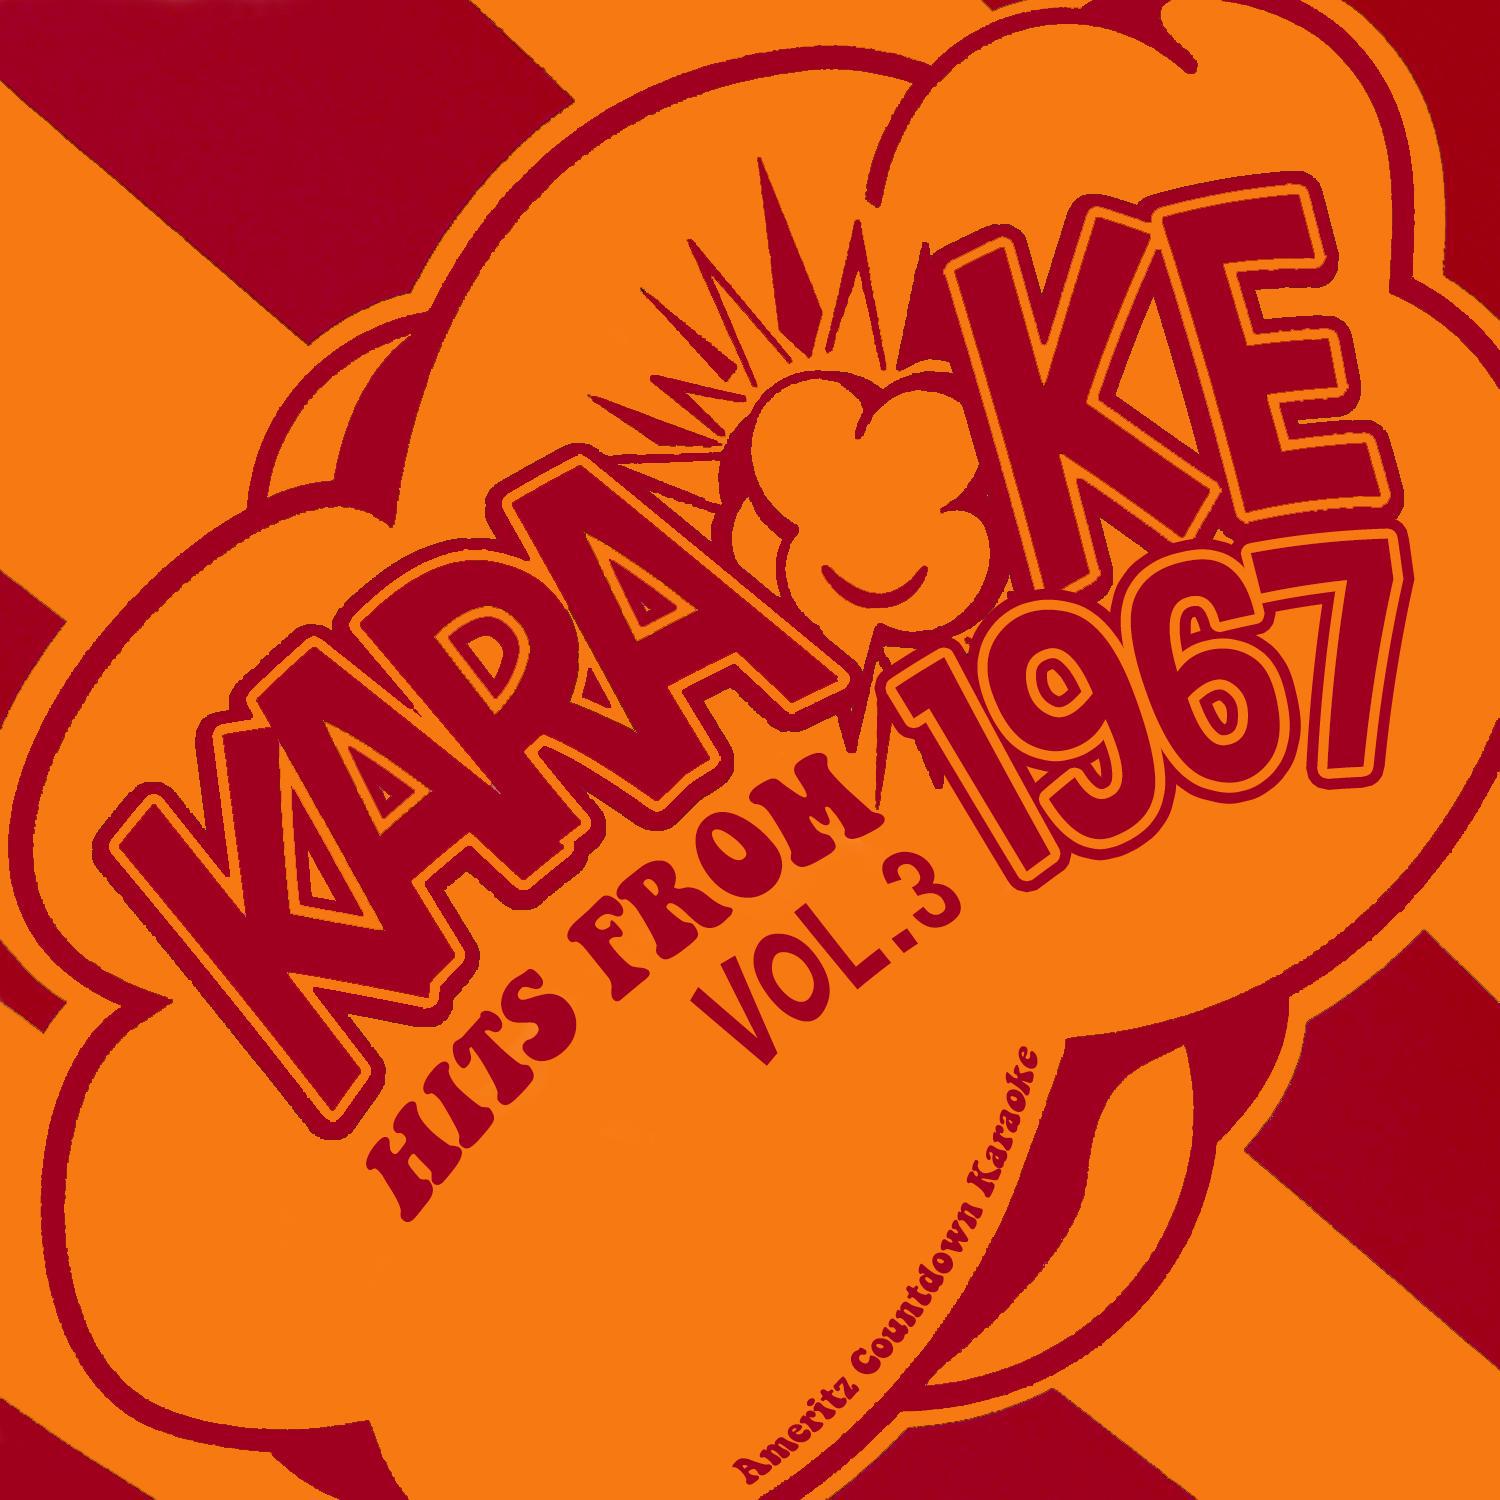 Karaoke Hits from 1967, Vol. 3